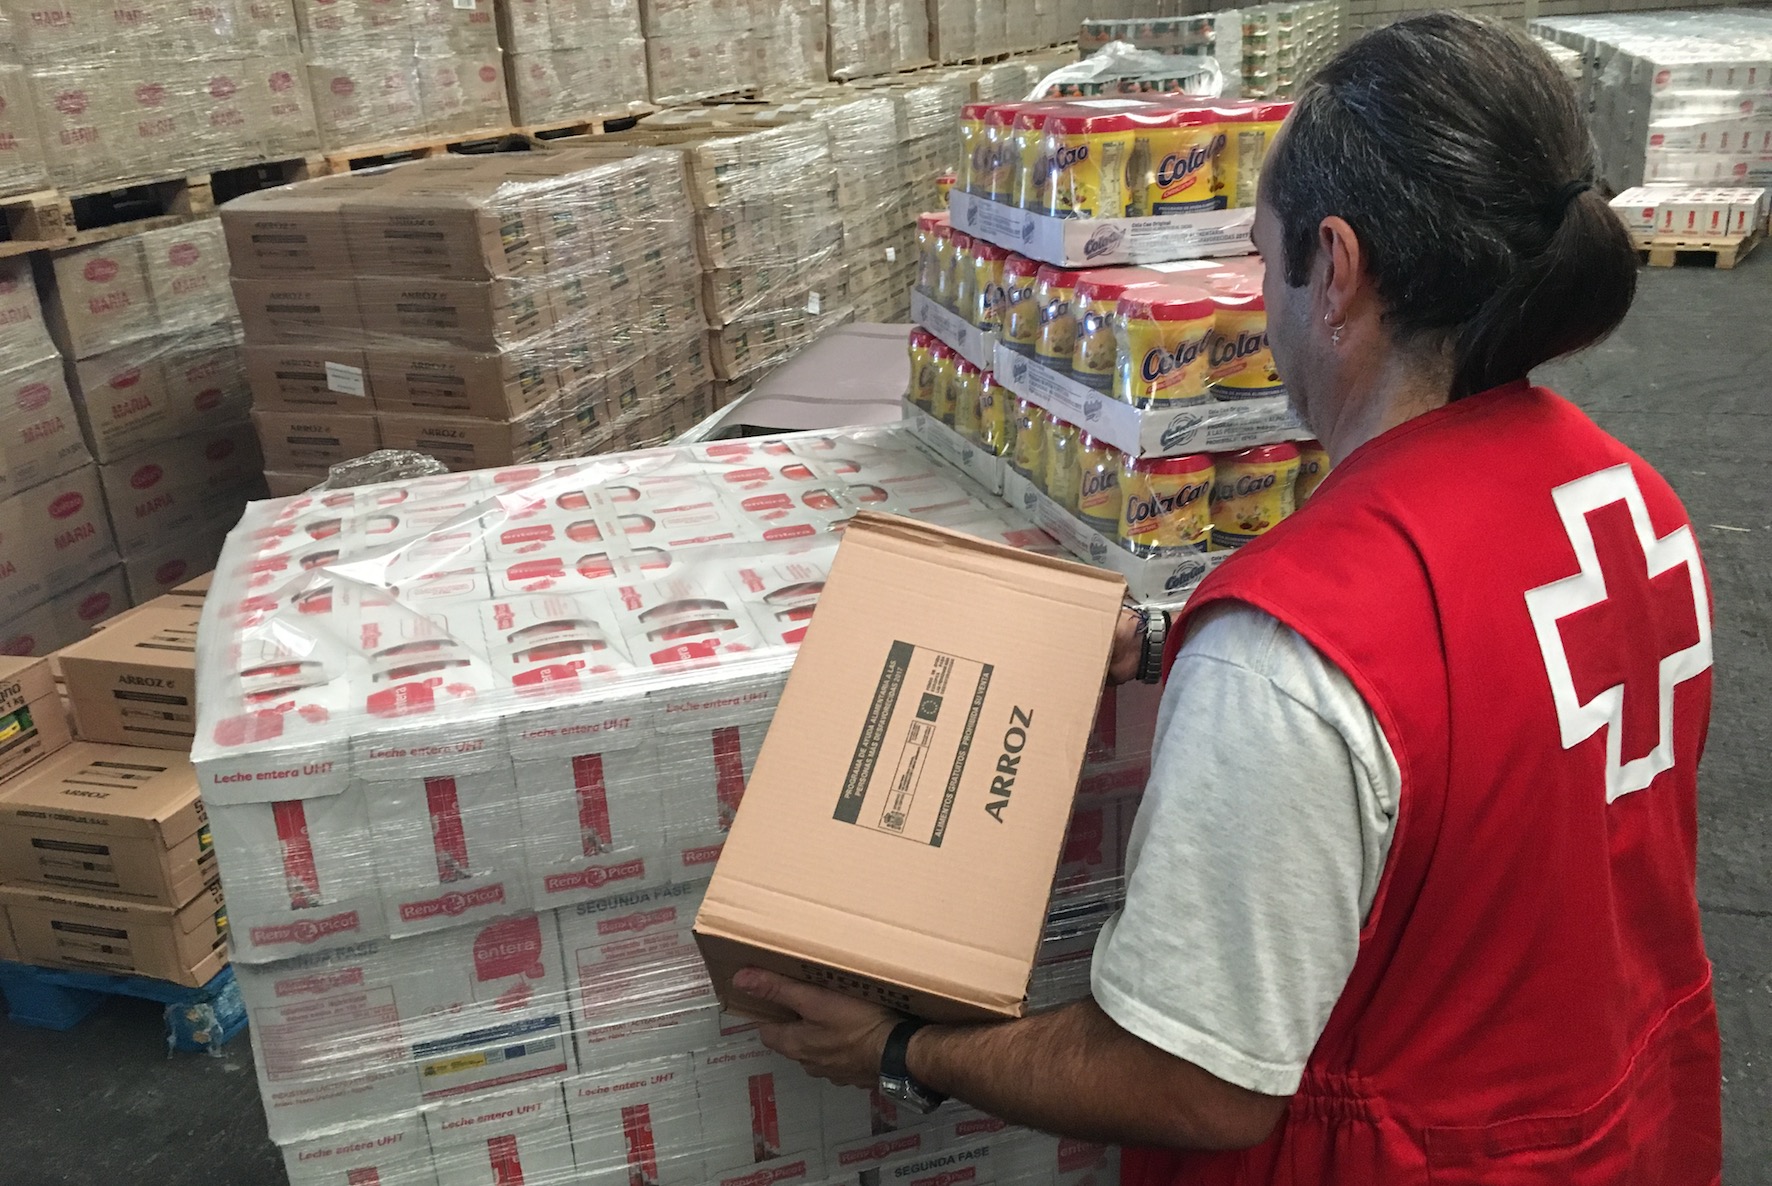 Cruz Roja distribuye 7.450 kilos de alimentos entre las personas más desfavorecidas de El Hierro